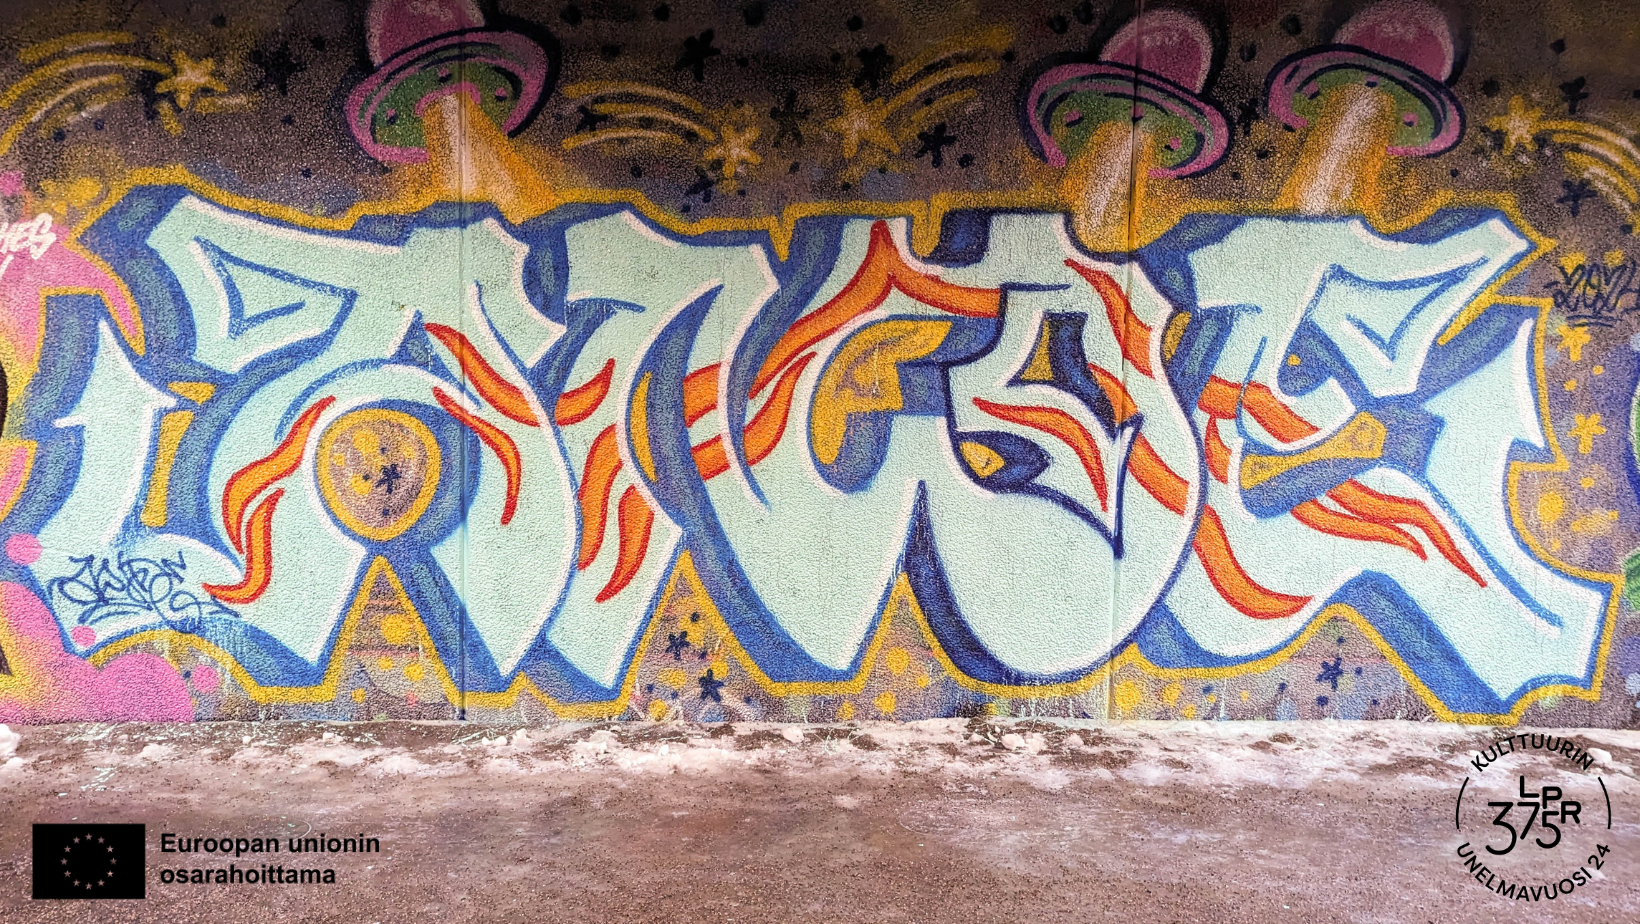 Sininen graffiti maalattuna seinään.